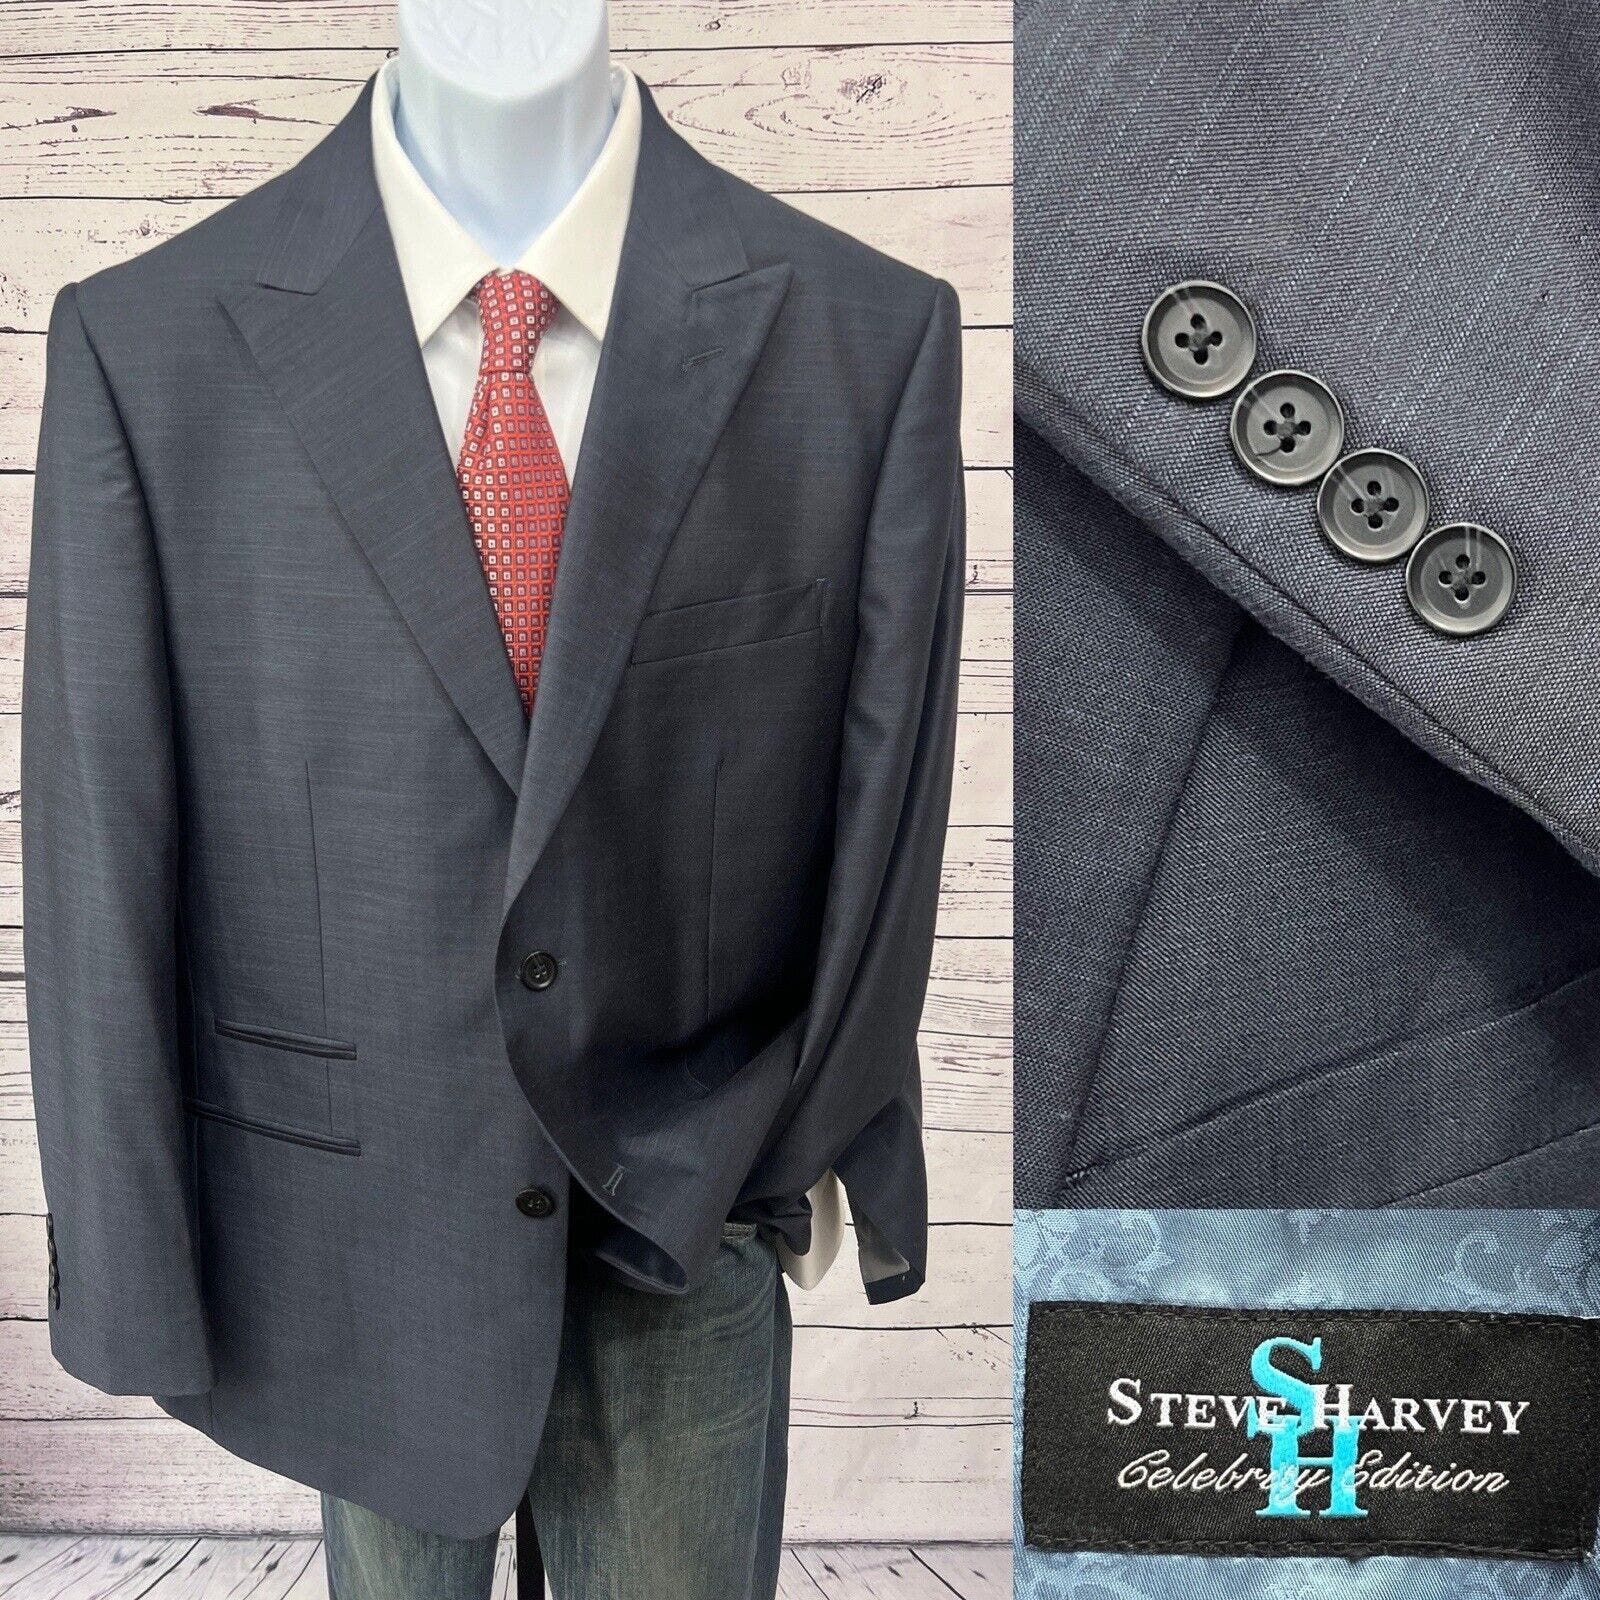 Steve Harvey Celebrity Edition 2 Button Suit Men’s 44R Blue Model King 34x34